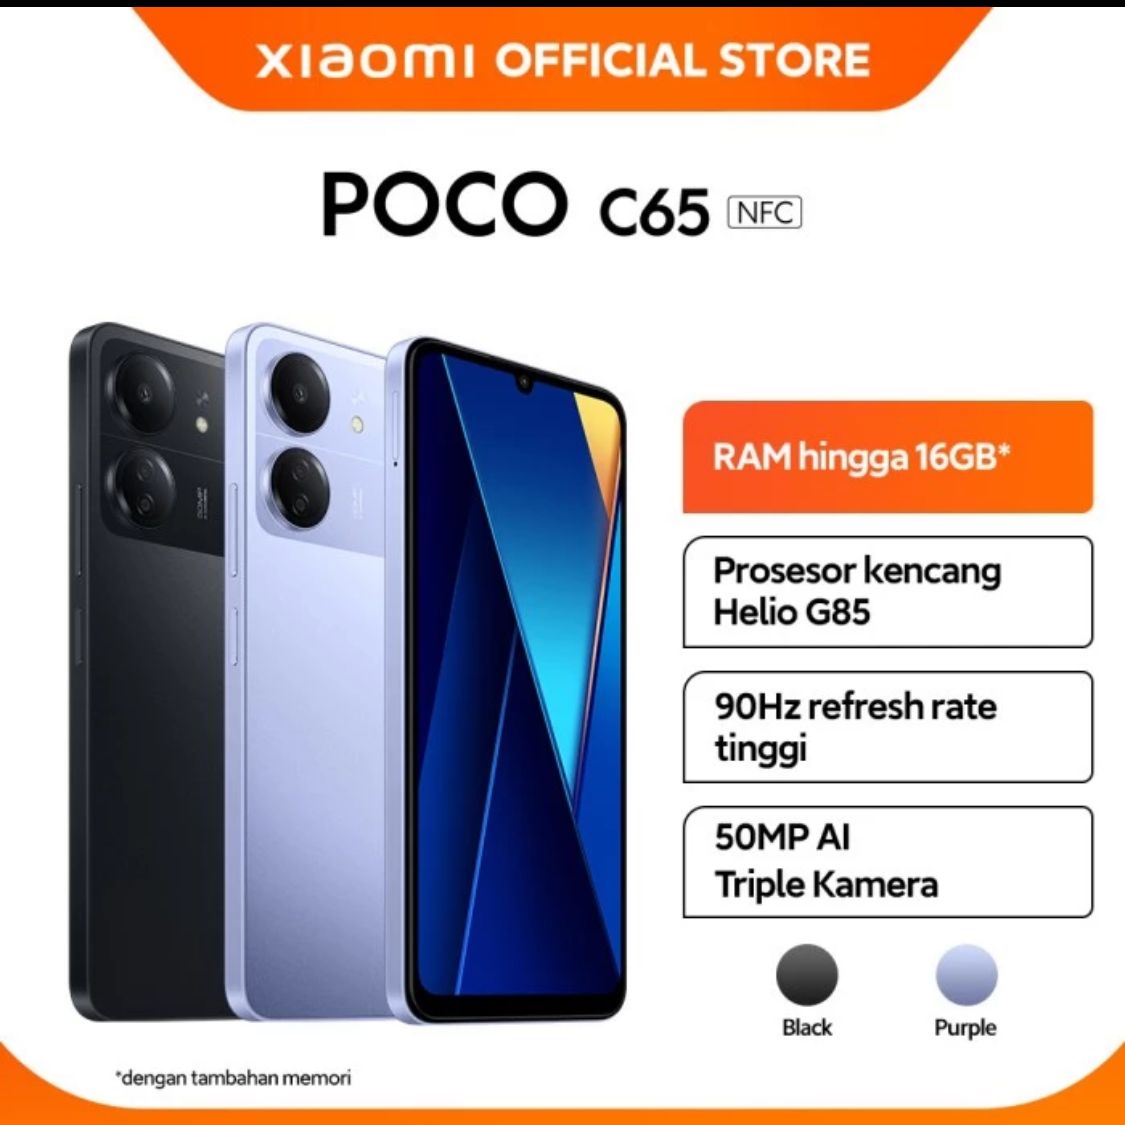 POCO C65 harga di bawah Rp 1,5 juta. 